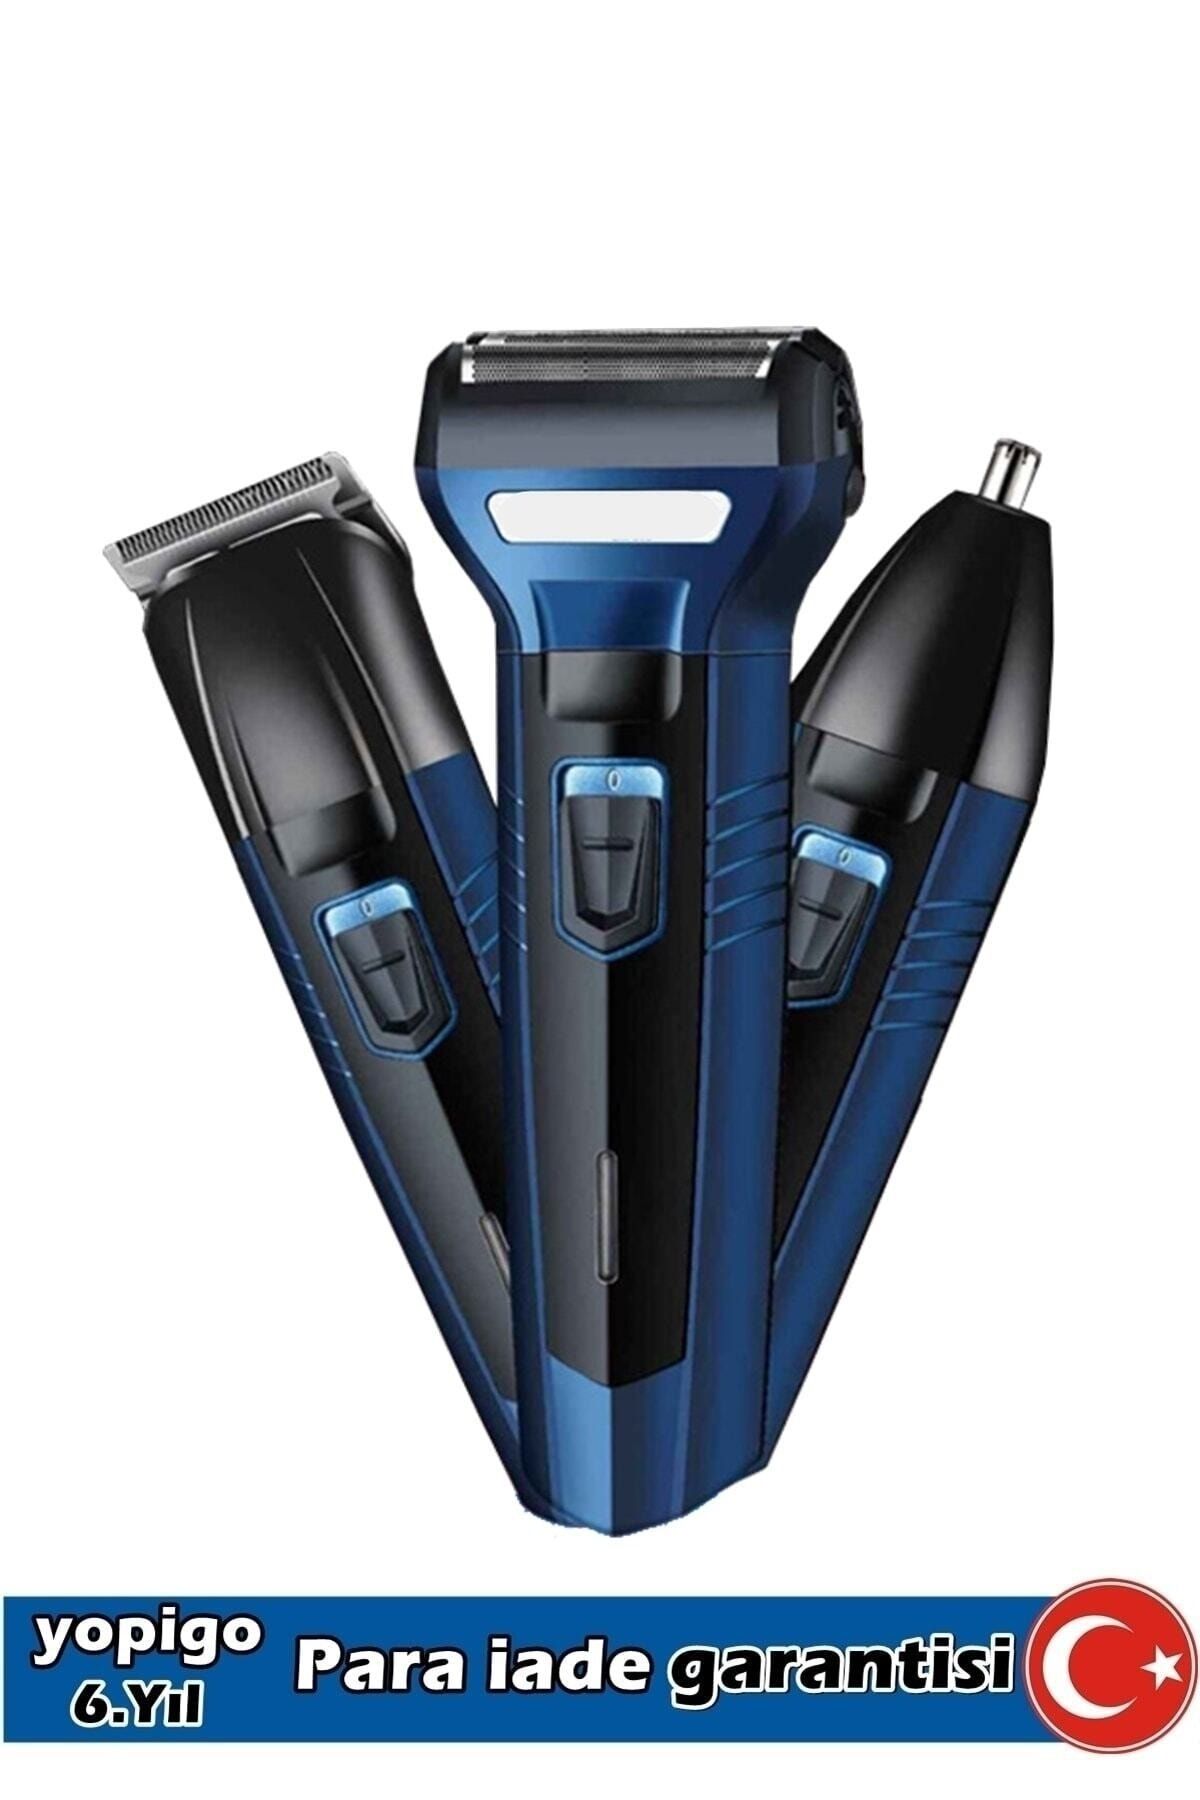 yopigo Gm-566 Pro Yeni Model Blue Turbo 3 In 1 Erkek Bakım Seti Saç Sakal Burun Tıraş Makinesi